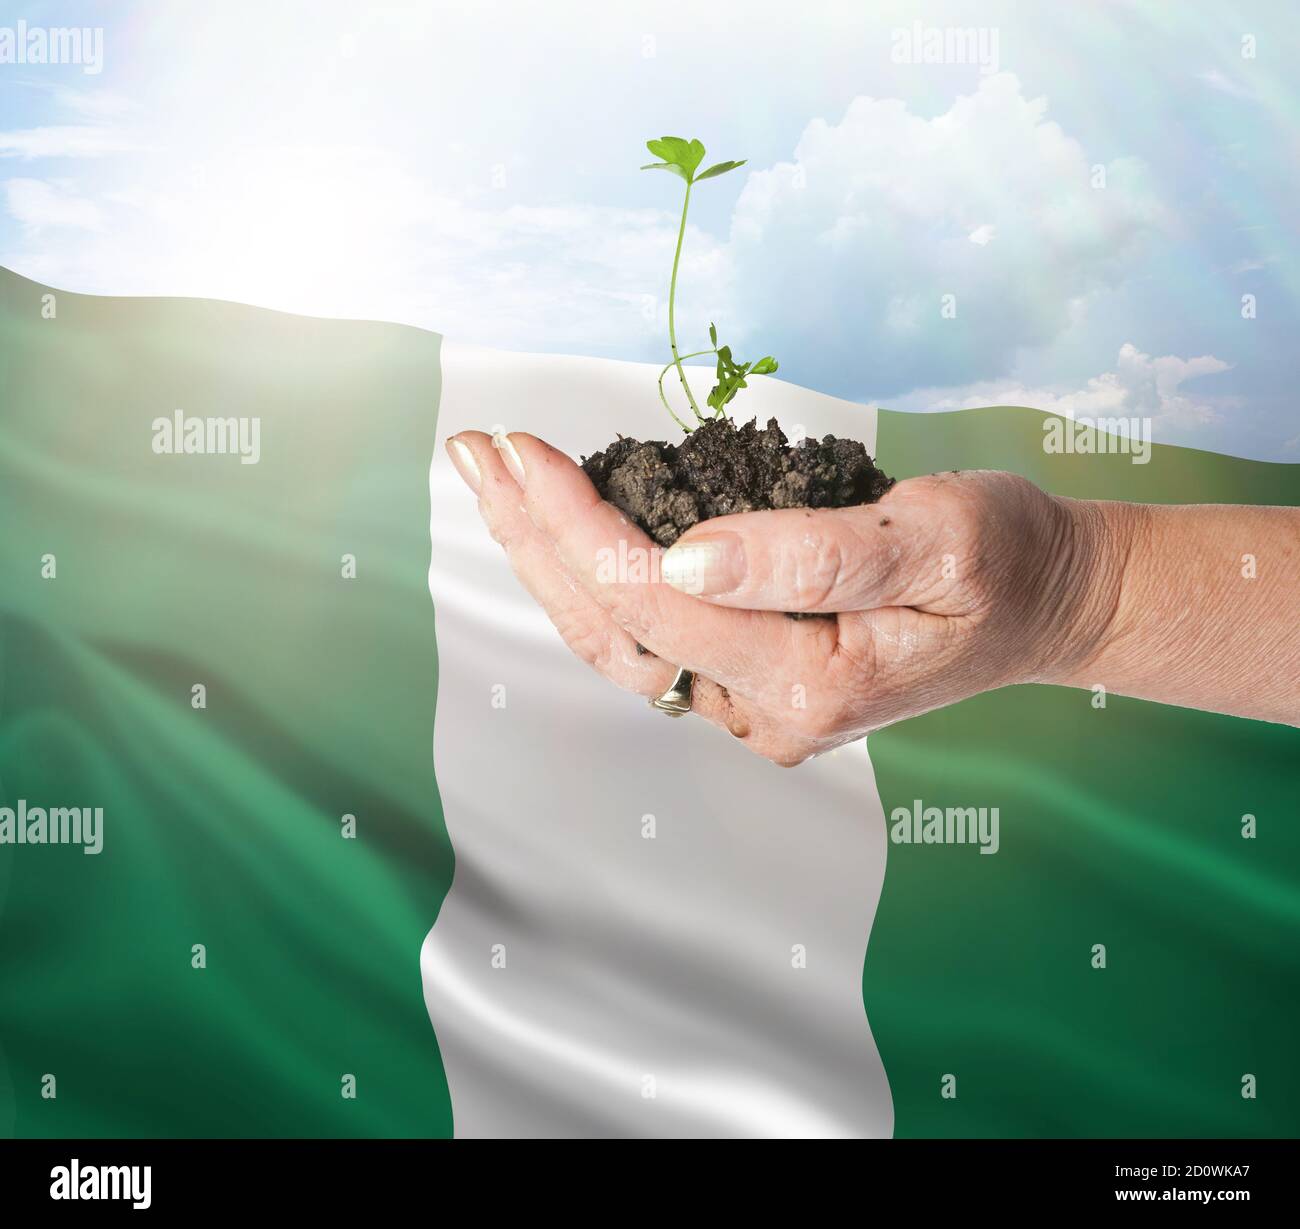 Nigeria crecimiento y nuevo comienzo. Concepto de energía renovable verde y ecología. Mano sosteniendo planta joven. Foto de stock